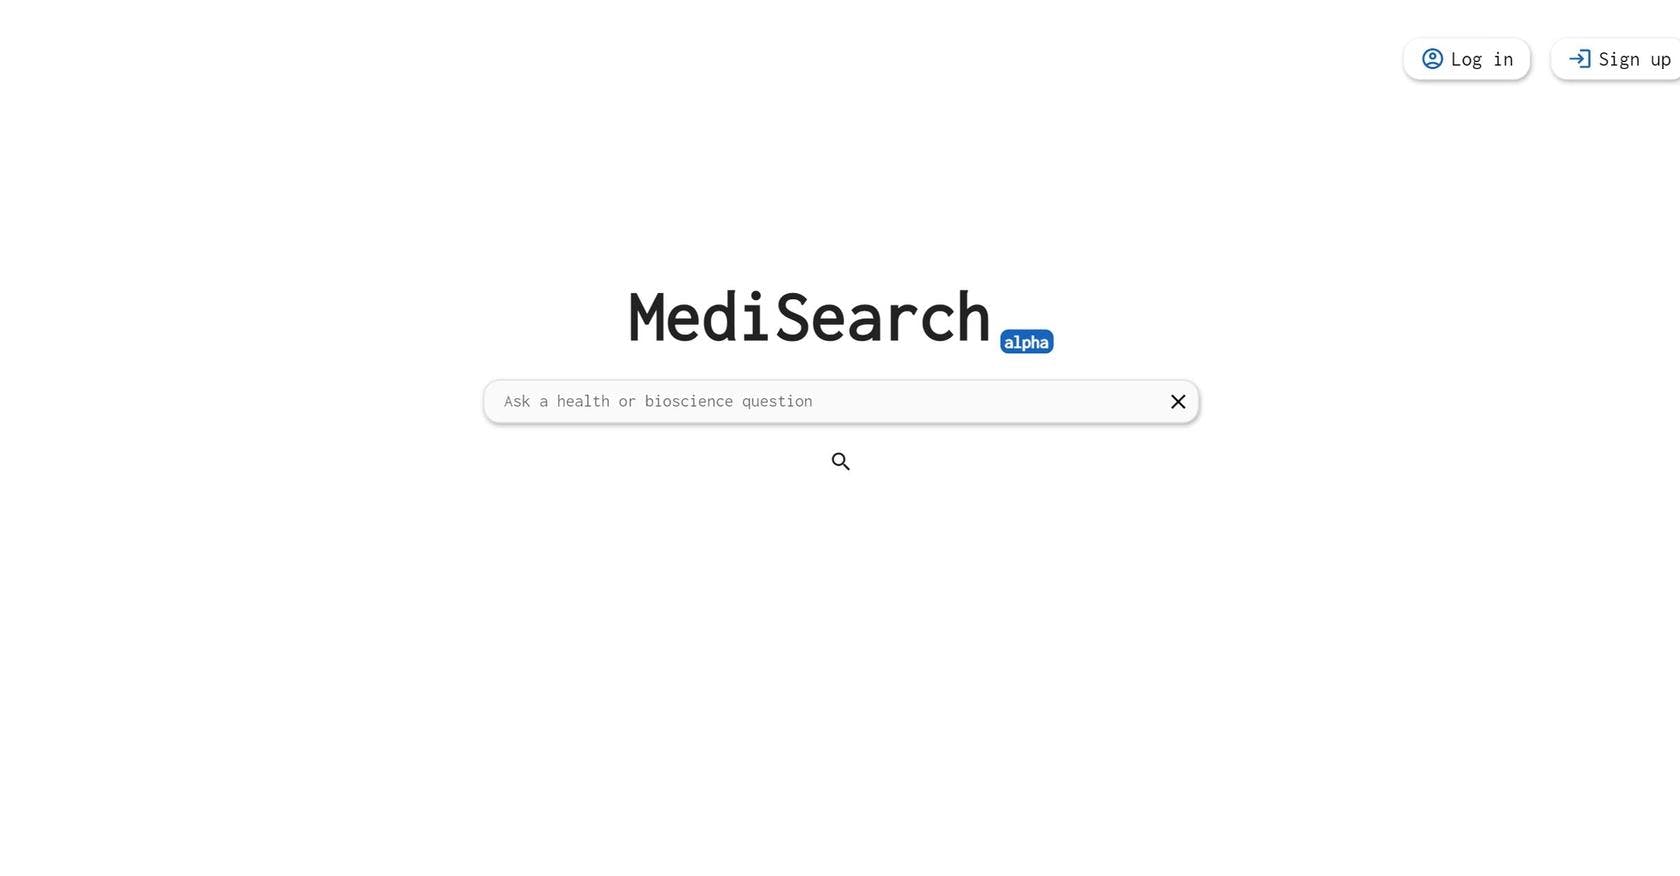 MediSearch